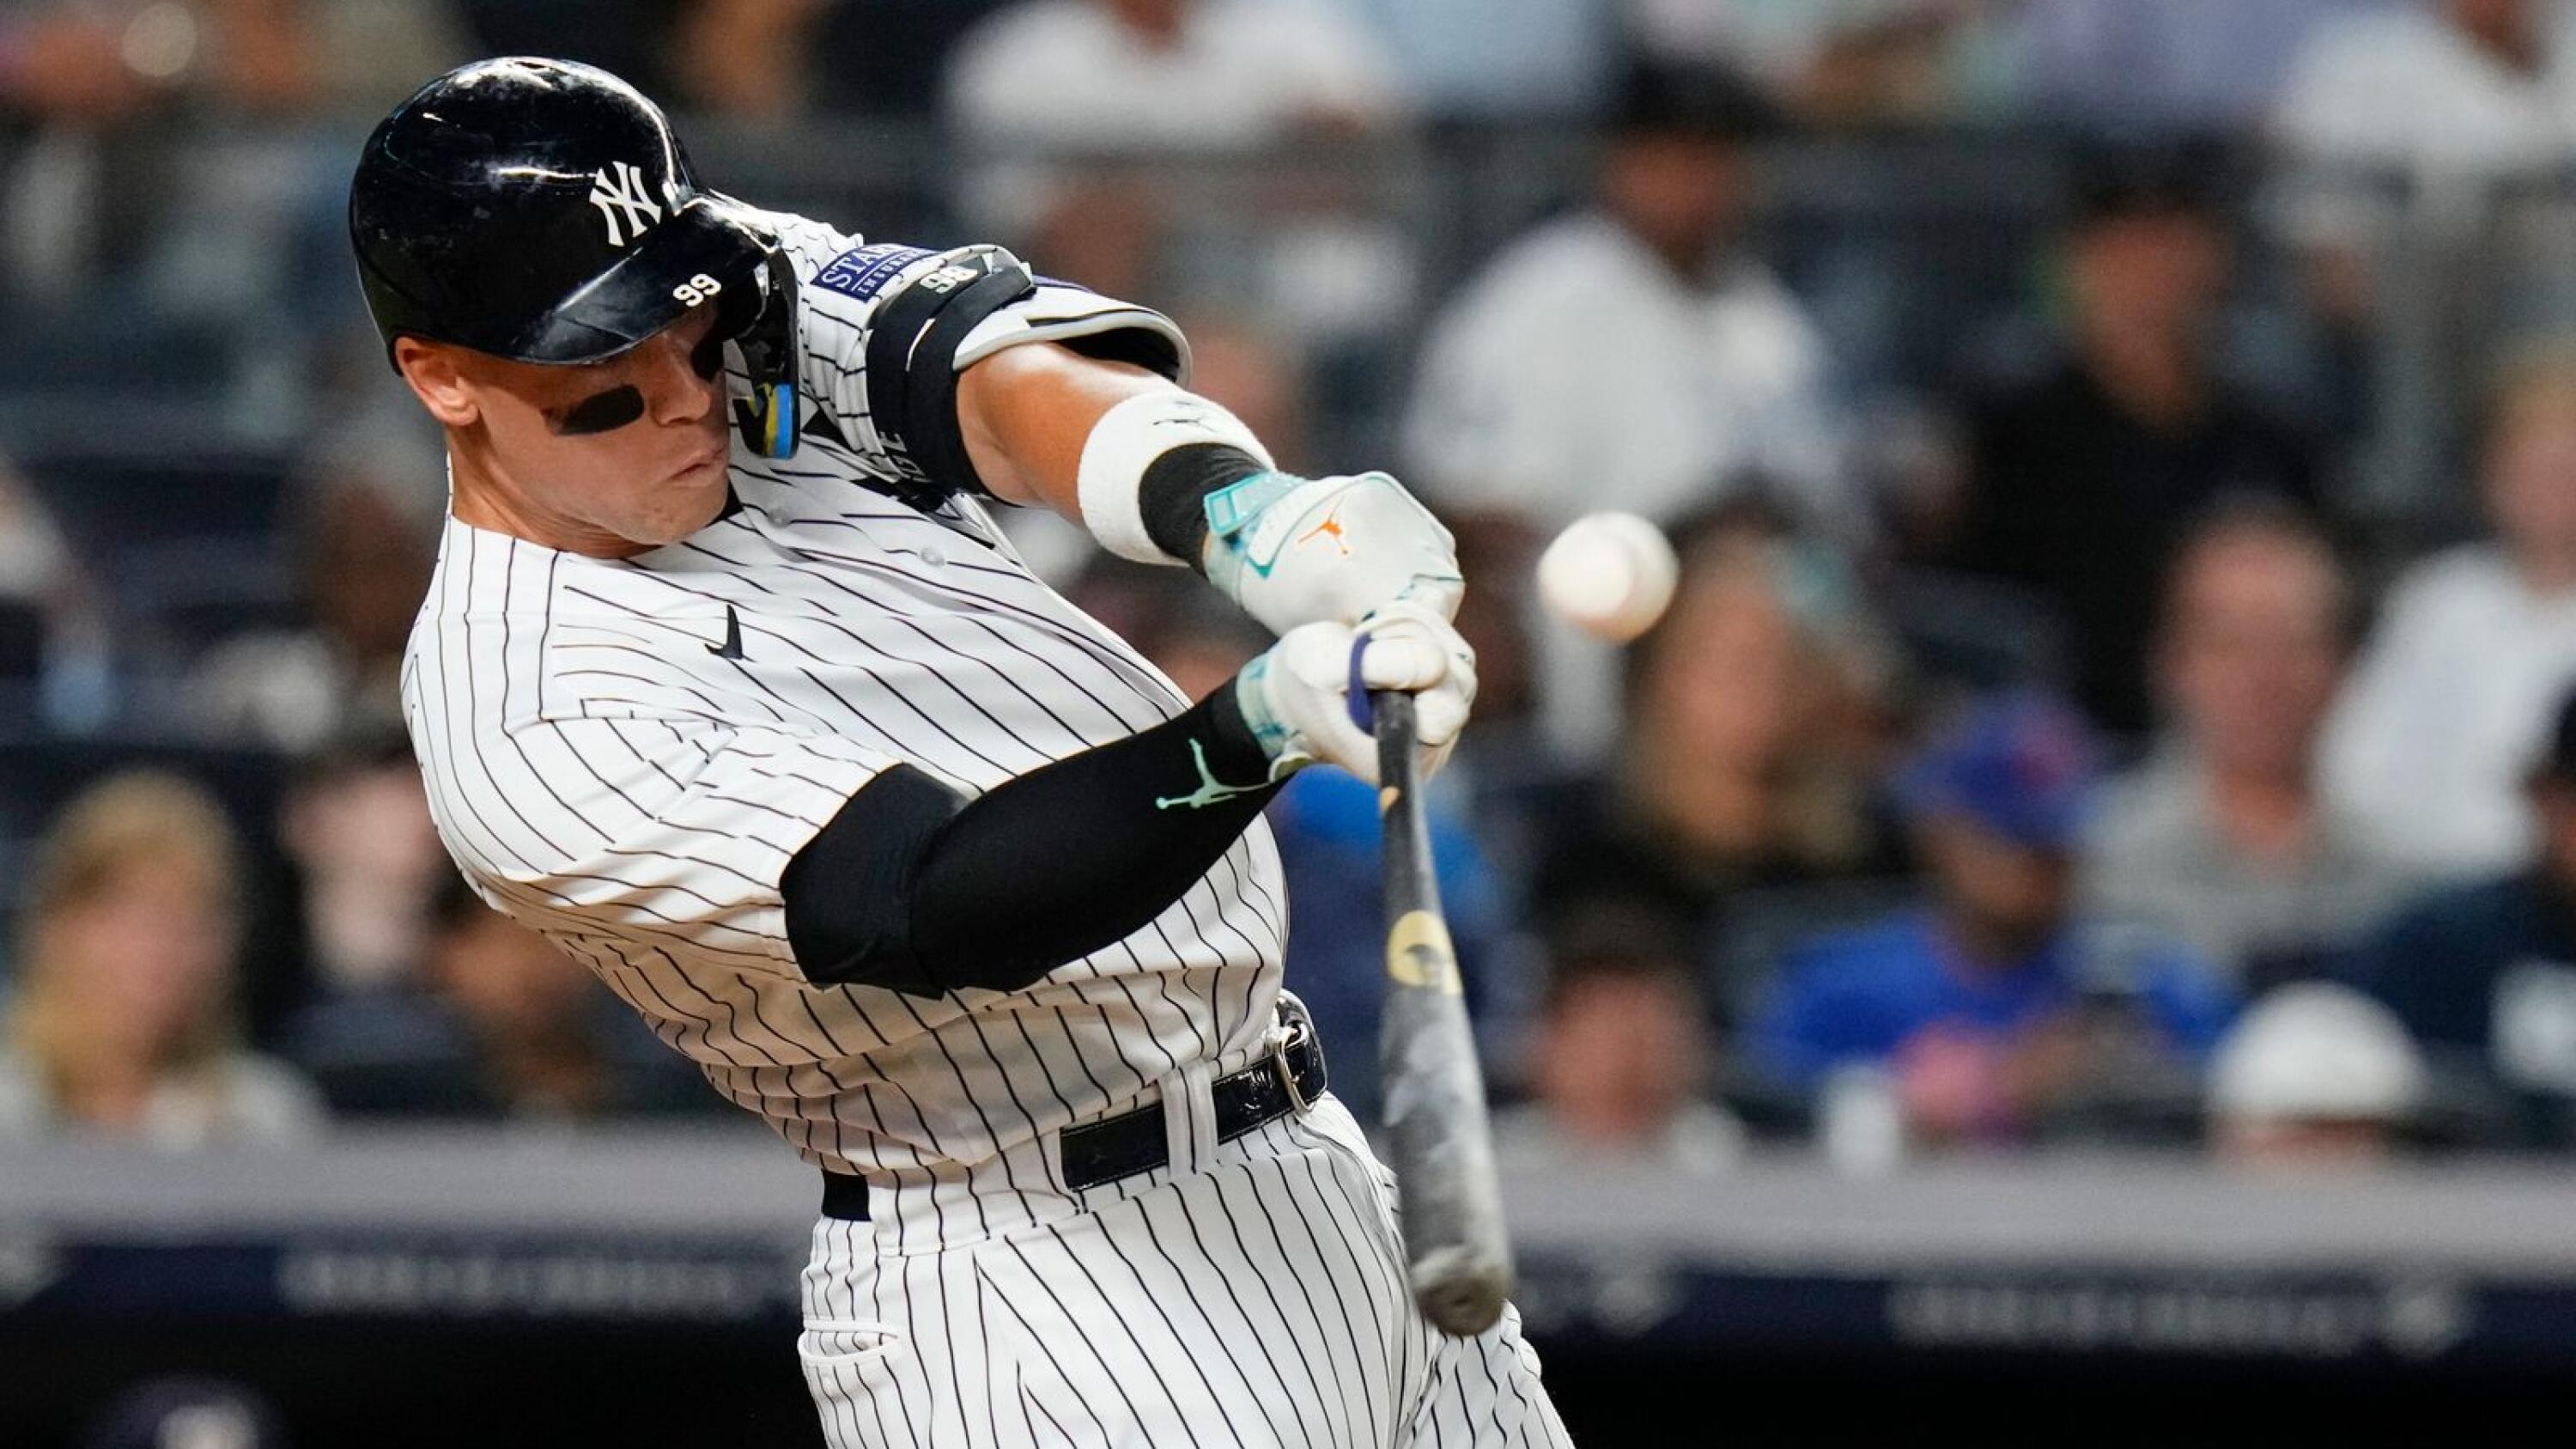 Yankees At-Bat of the Week: Giancarlo Stanton's game tying homer